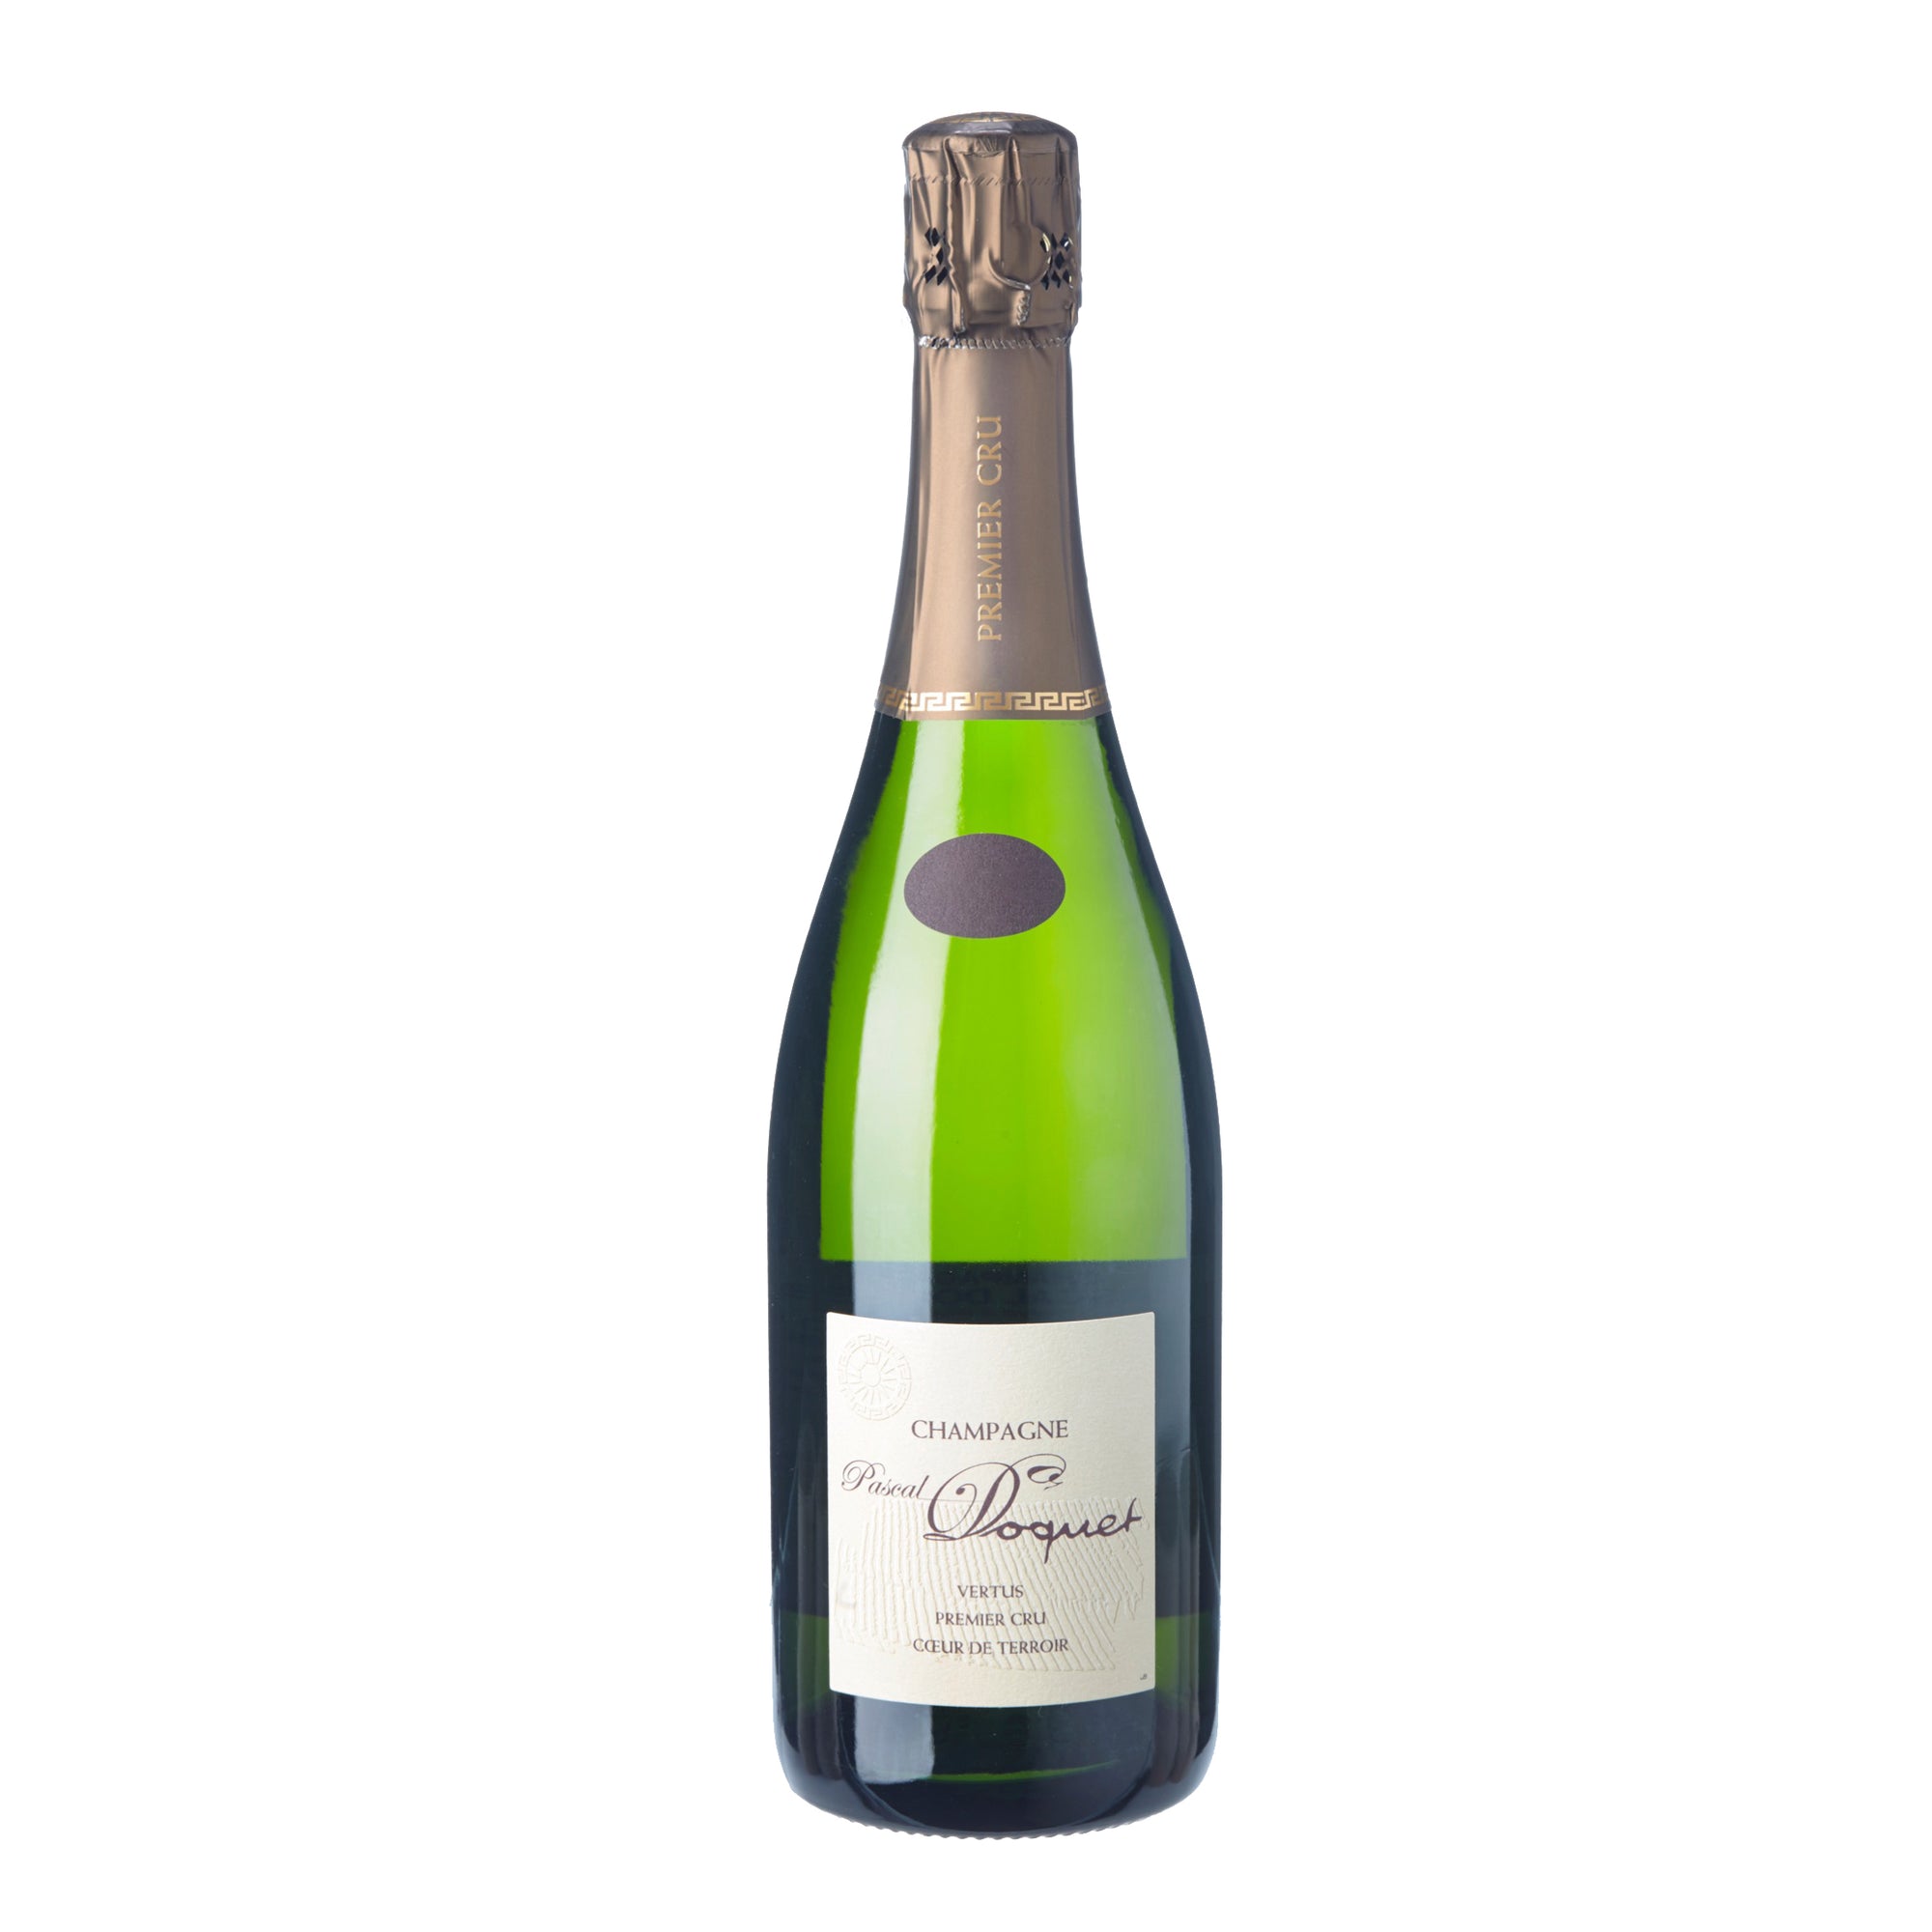 PASCAL DOQUET Champagne 1er Cru Brut "Vertus - Coeur de Terroir" 2009